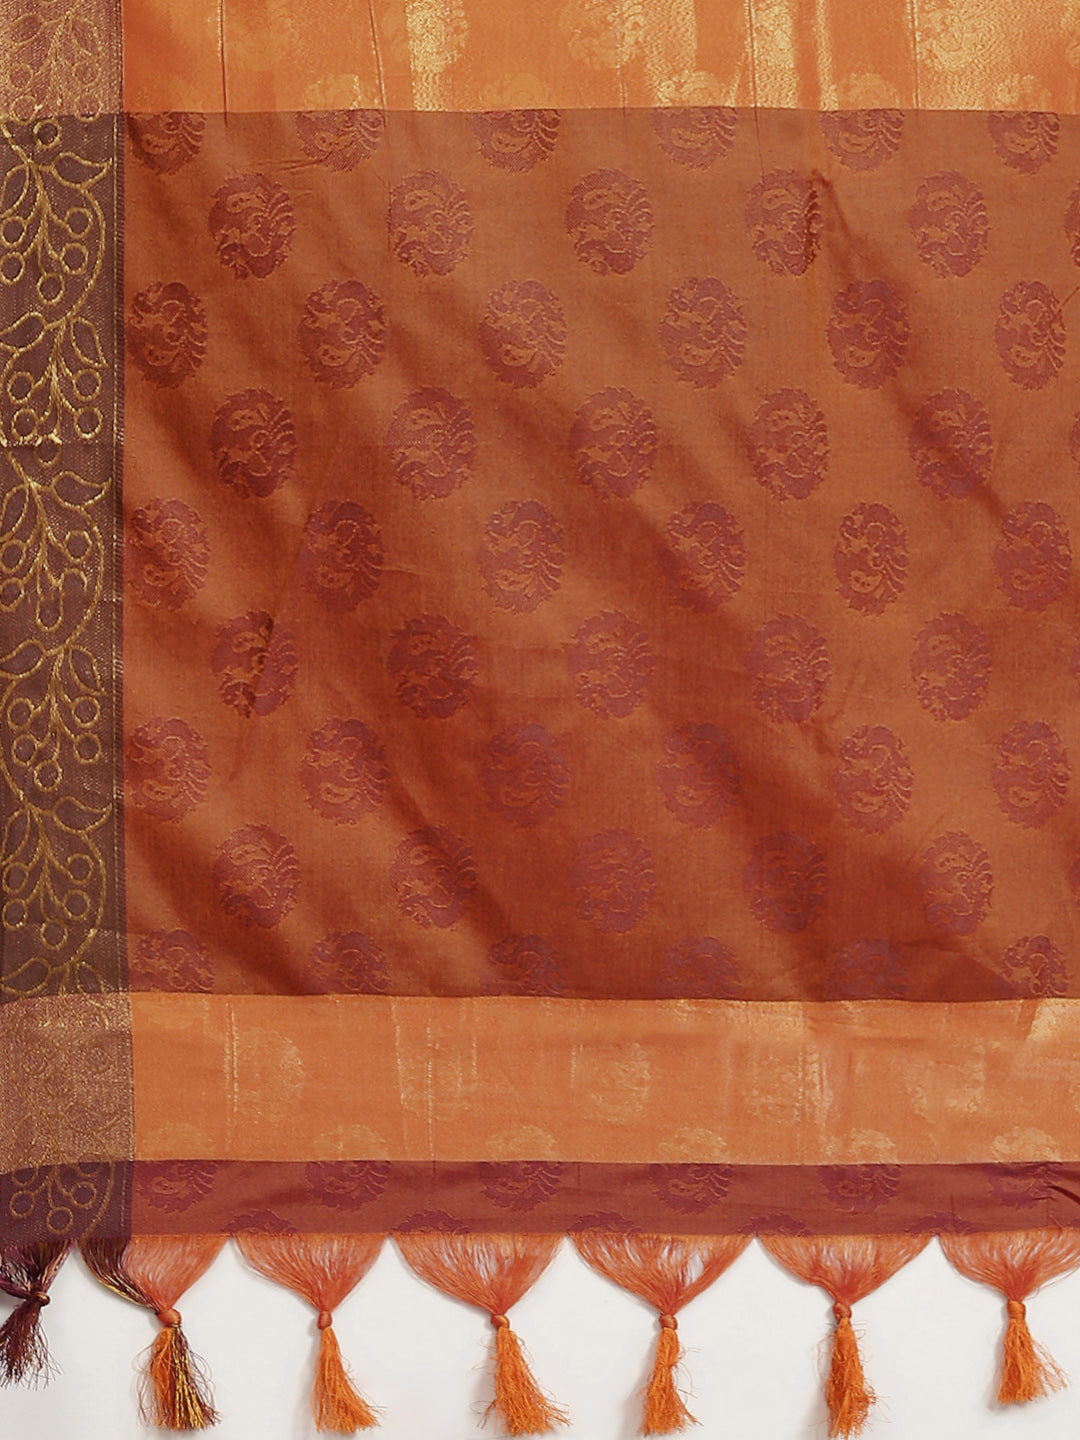 Ishin Women's Art Silk Orange & Maroon Woven Design Saree With Blouse Piece